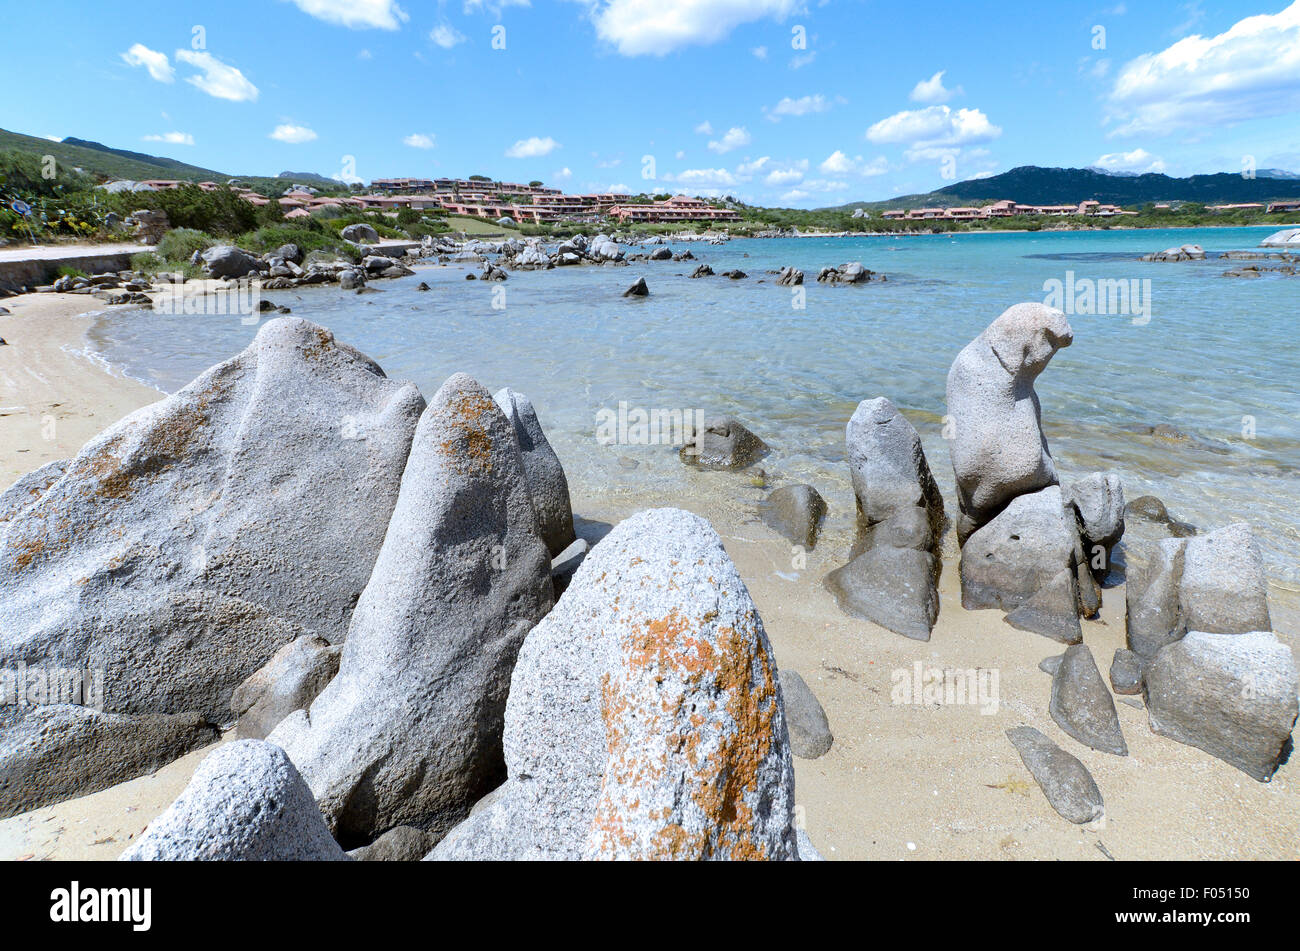 Sardegna, Italia: una spiaggia del golfo di Marinella vicino a Golfo Aranci  Foto stock - Alamy